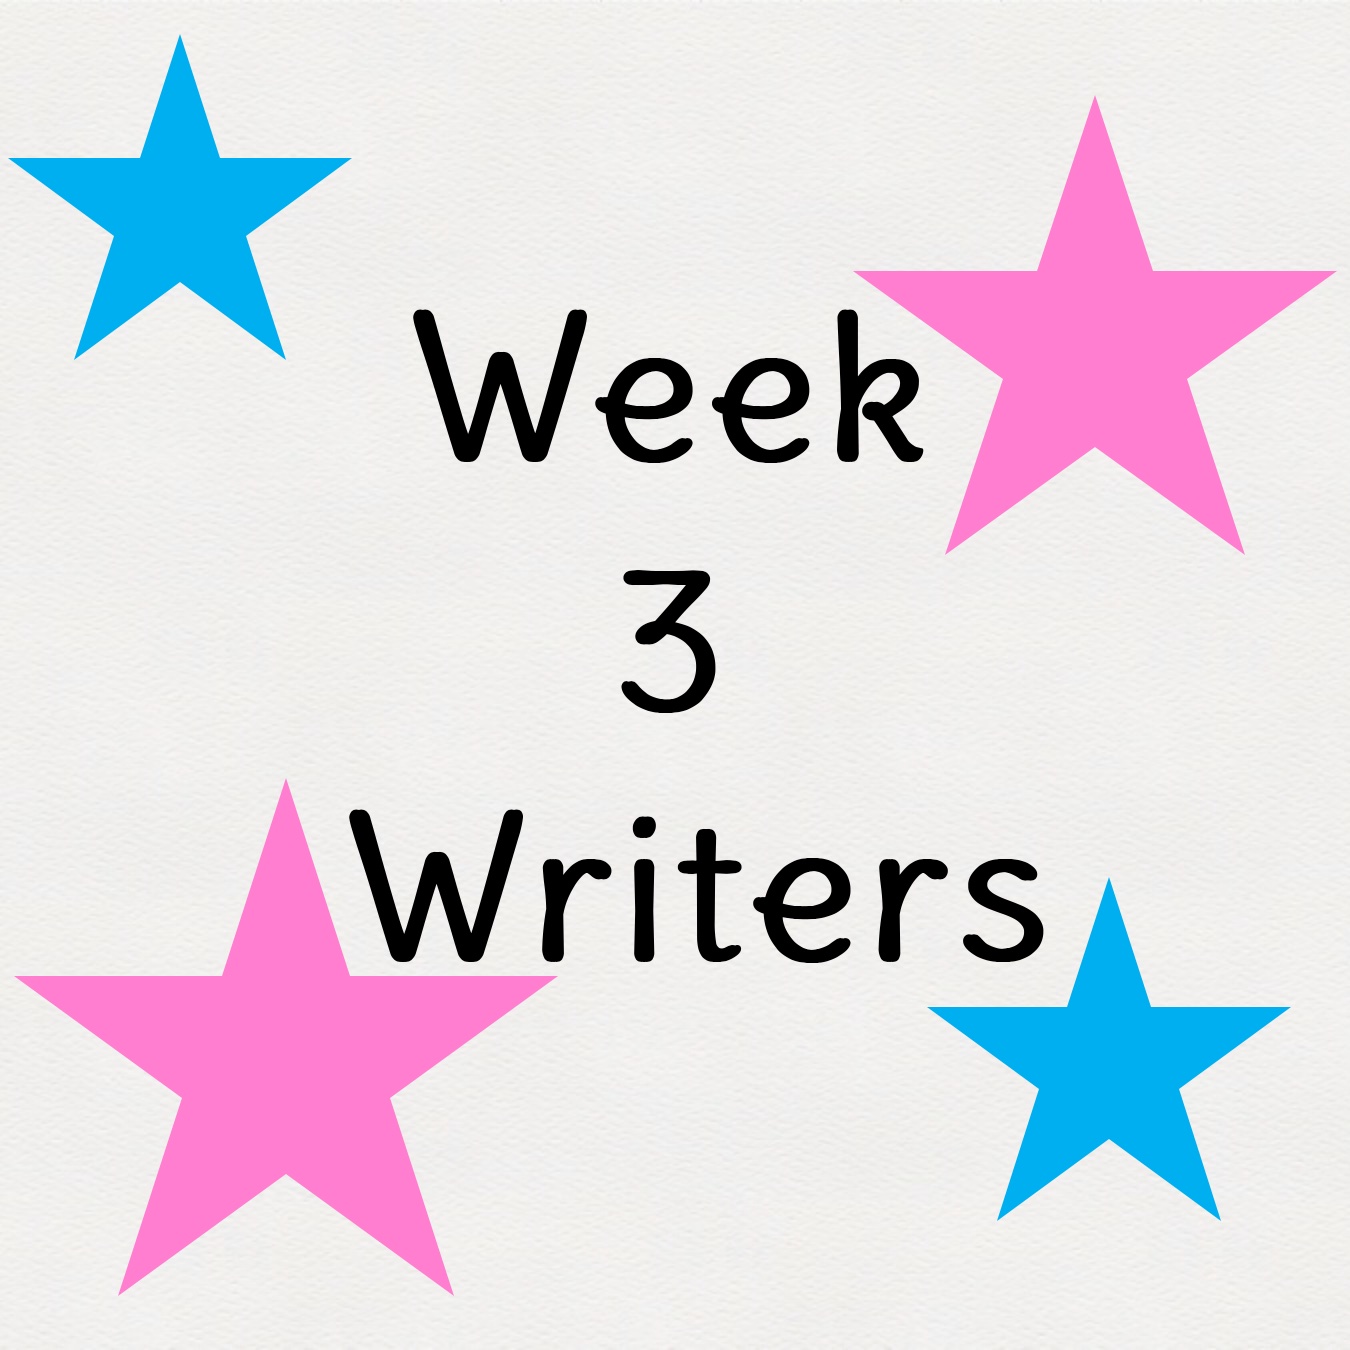 Week 3 Writers